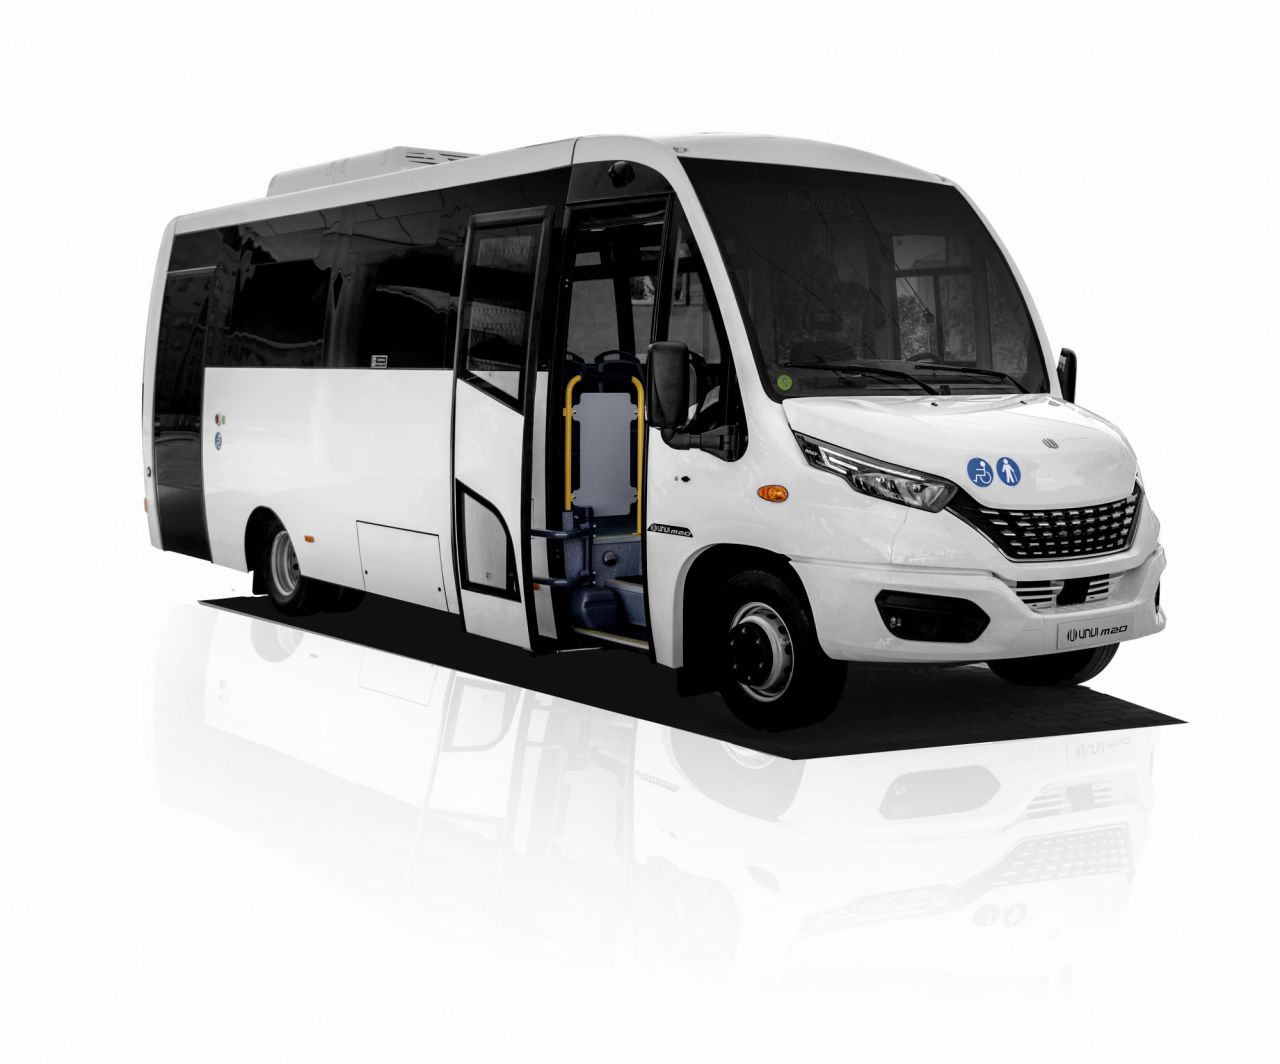 Tipo: Minibus urbano
Longitud: 8,2 metros
Altura: 3,1 metros
Chasis: Iveco 70C.
Capacidad: hasta 24 sentados + 11 de pie +1 PMR ó 2 transportines+C.
Versiones: Diésel y GNC.